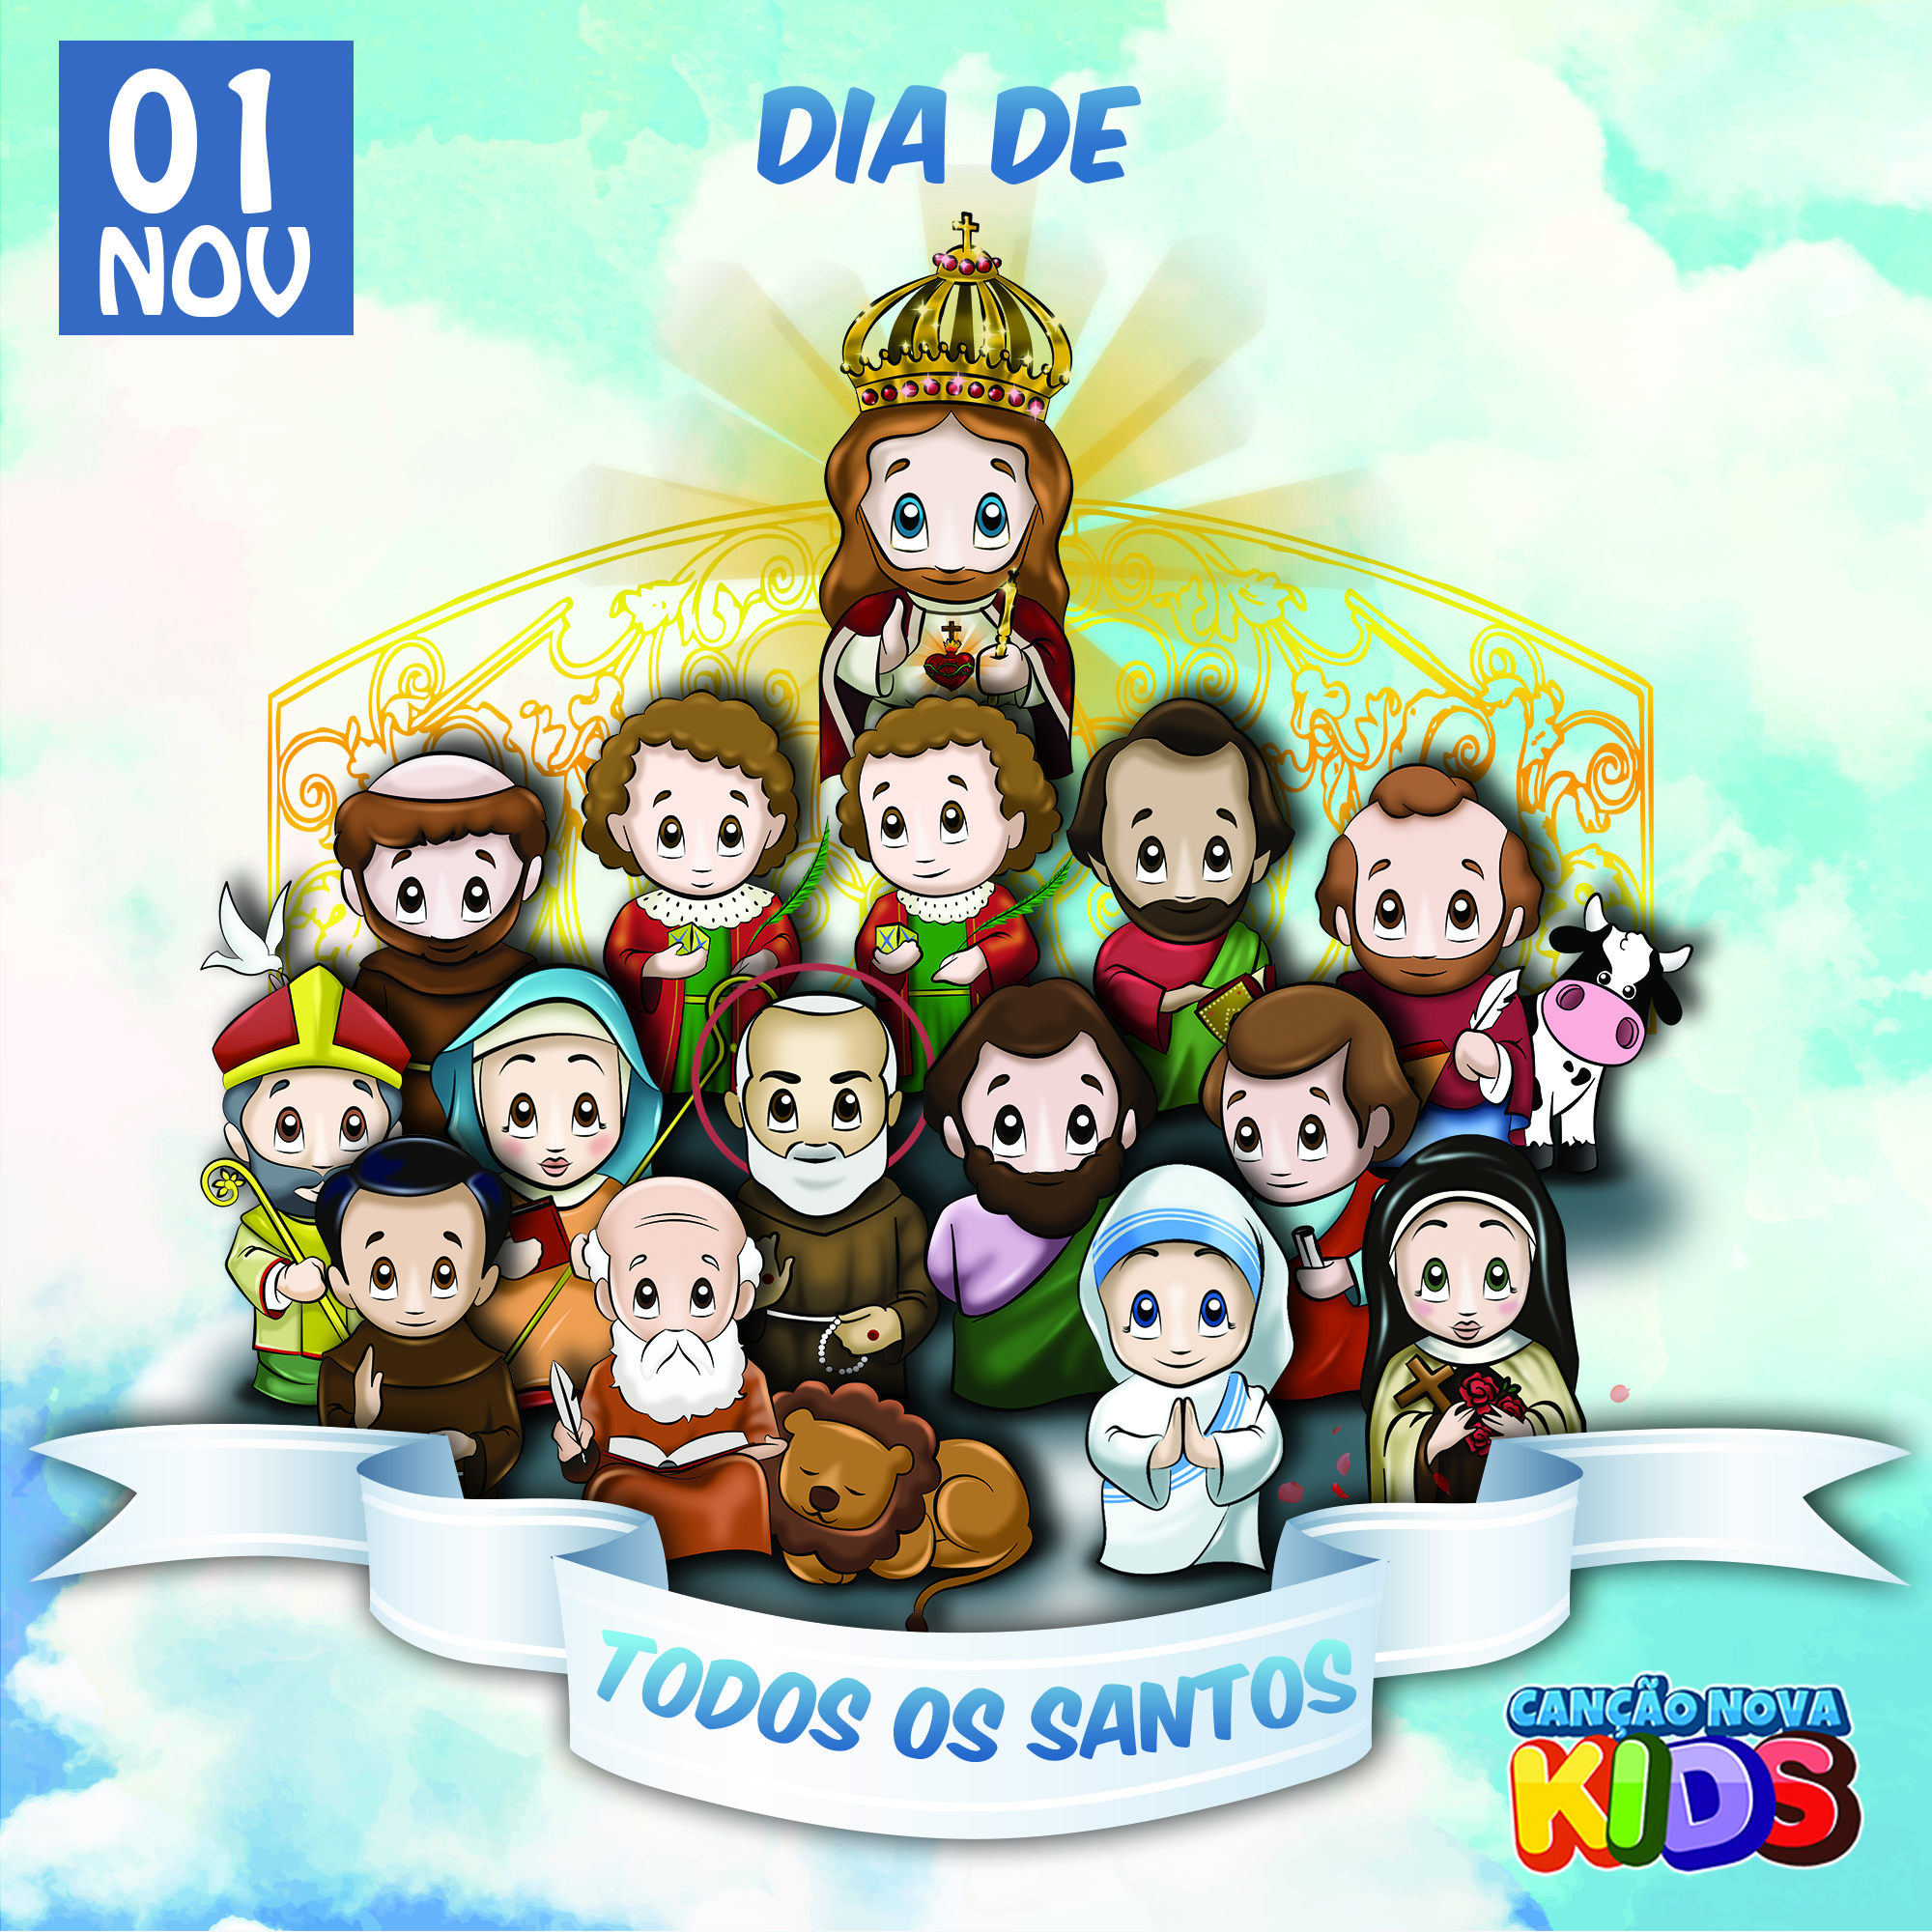 Dia de todos os Santos - Canção Nova Kids